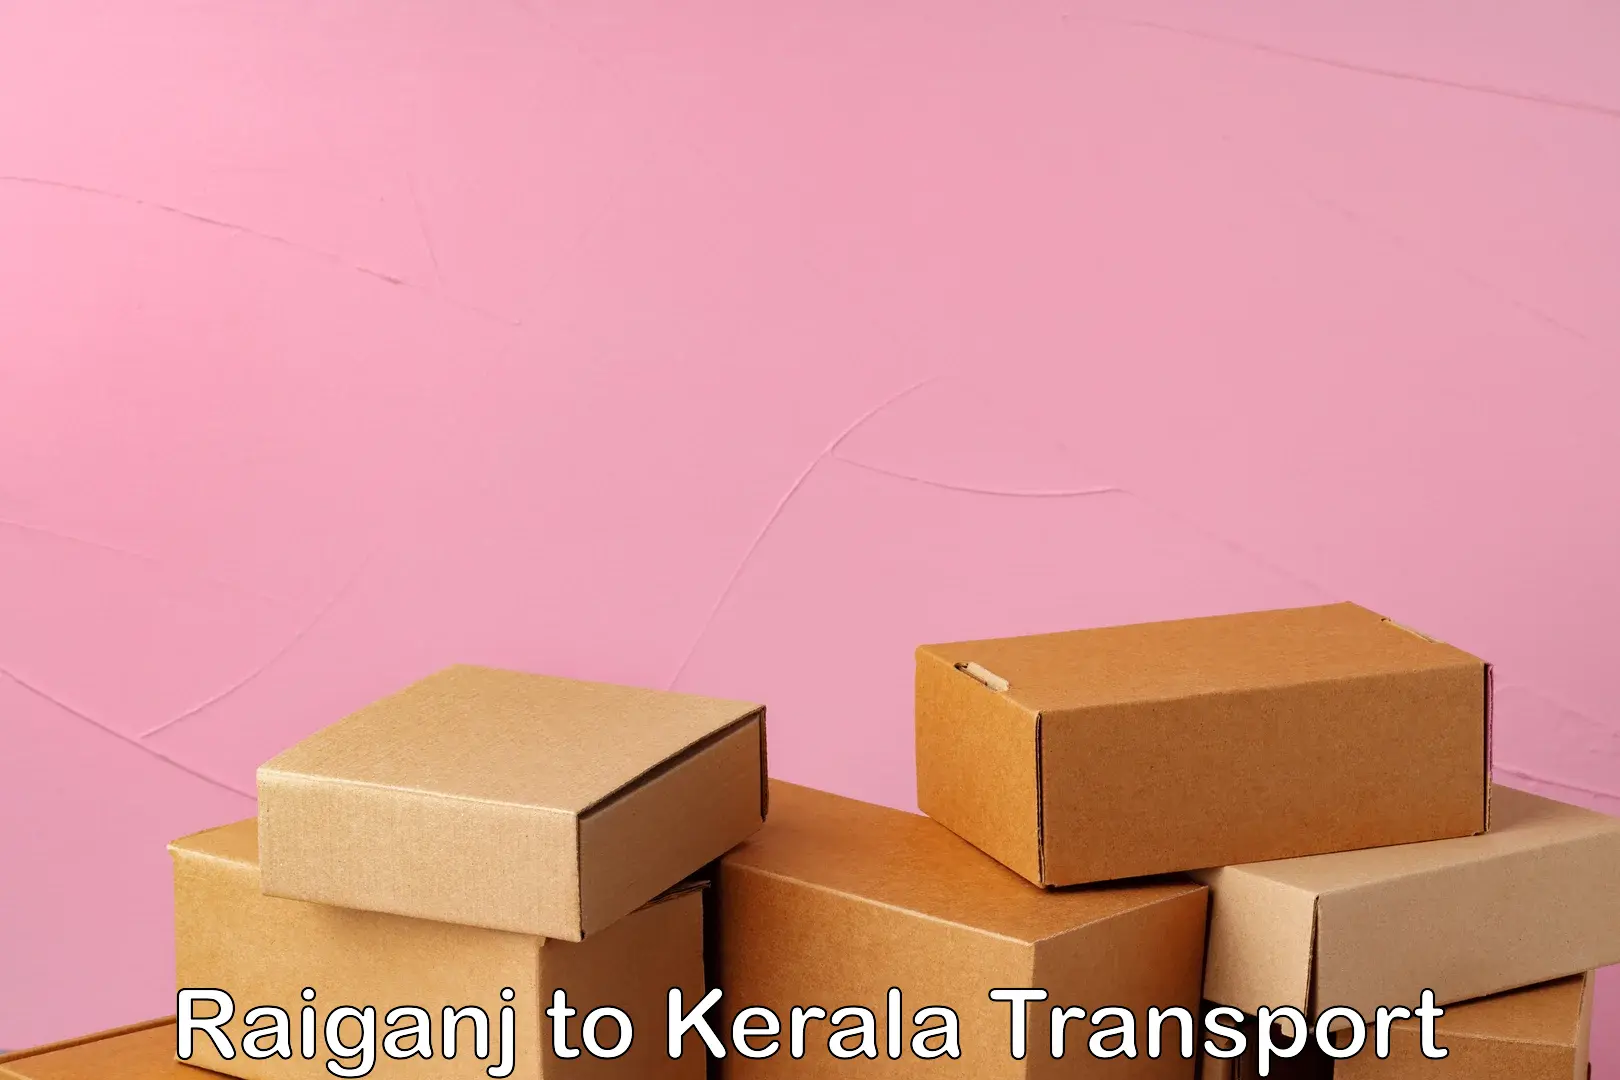 Furniture transport service Raiganj to Panthalam